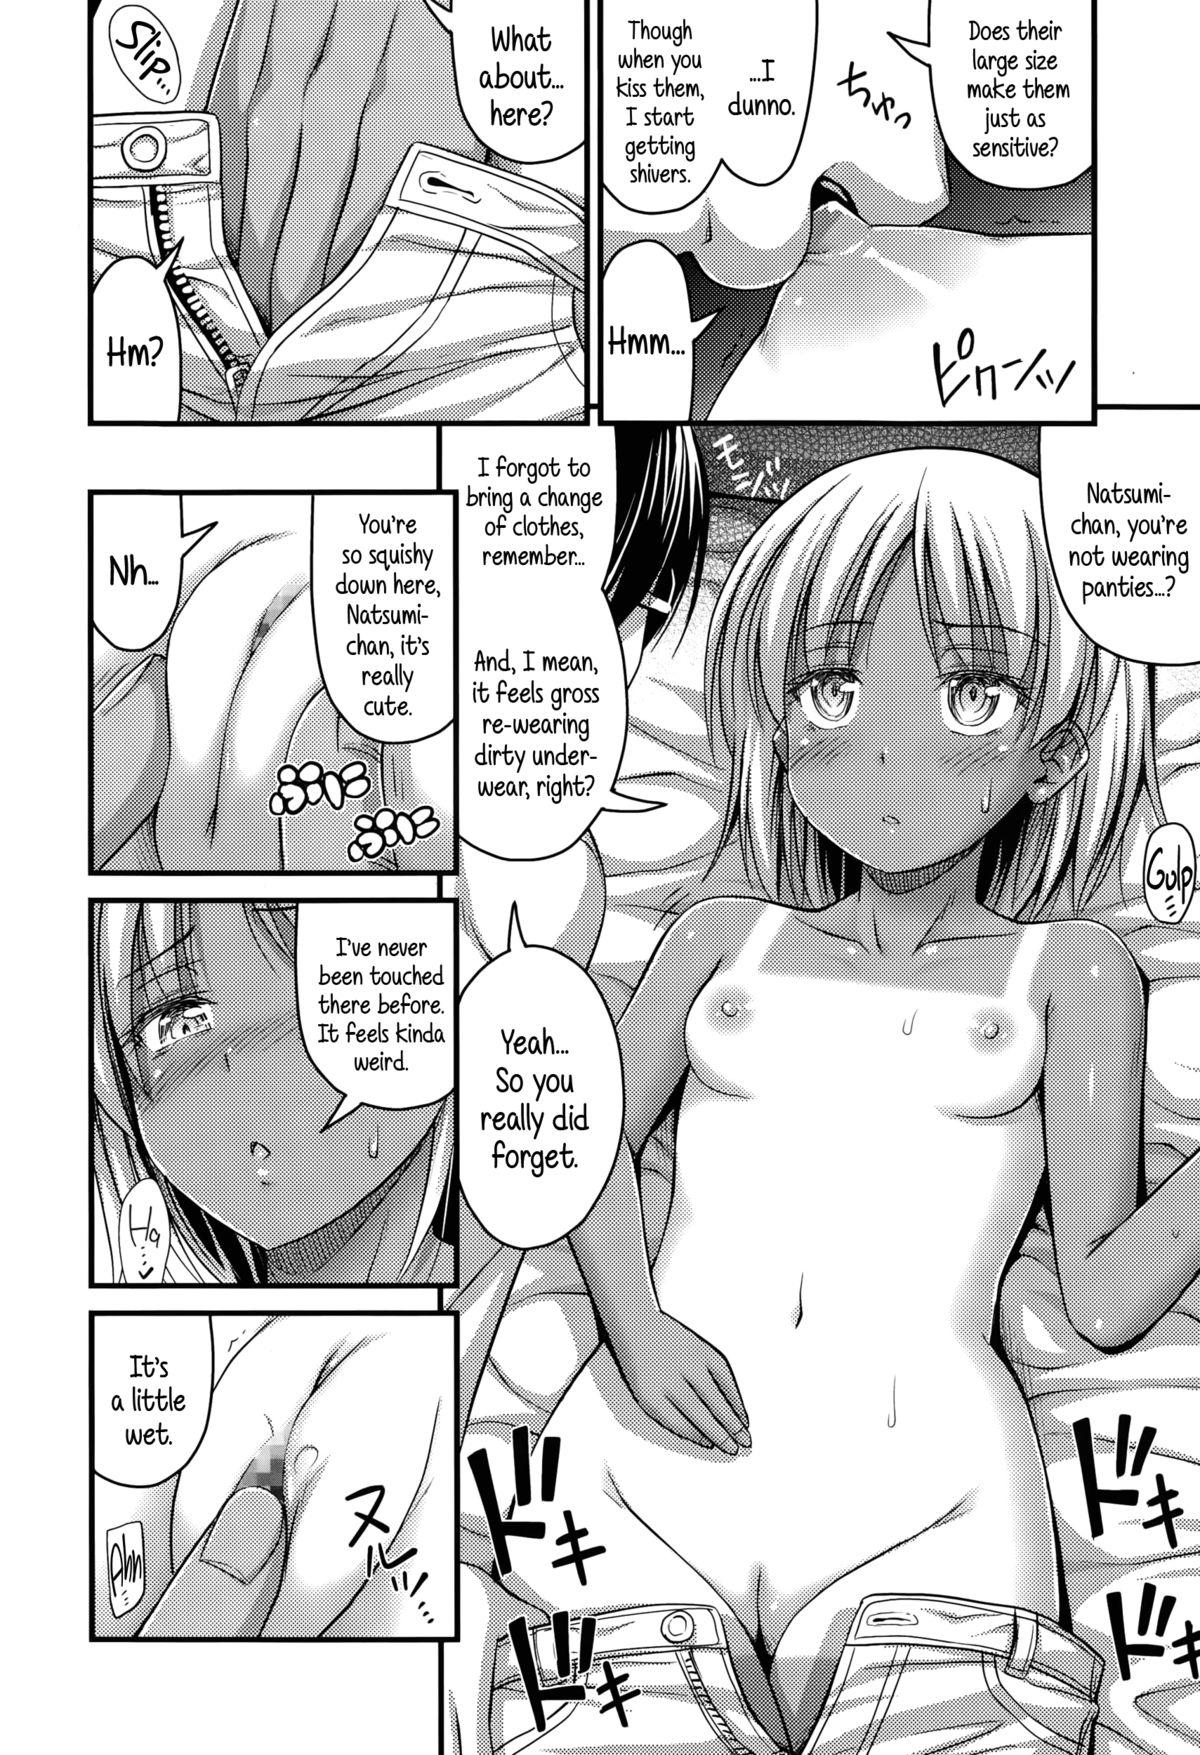 Chaturbate Komugi Iro Attack | Cocoa Color Attack Nudist - Page 8